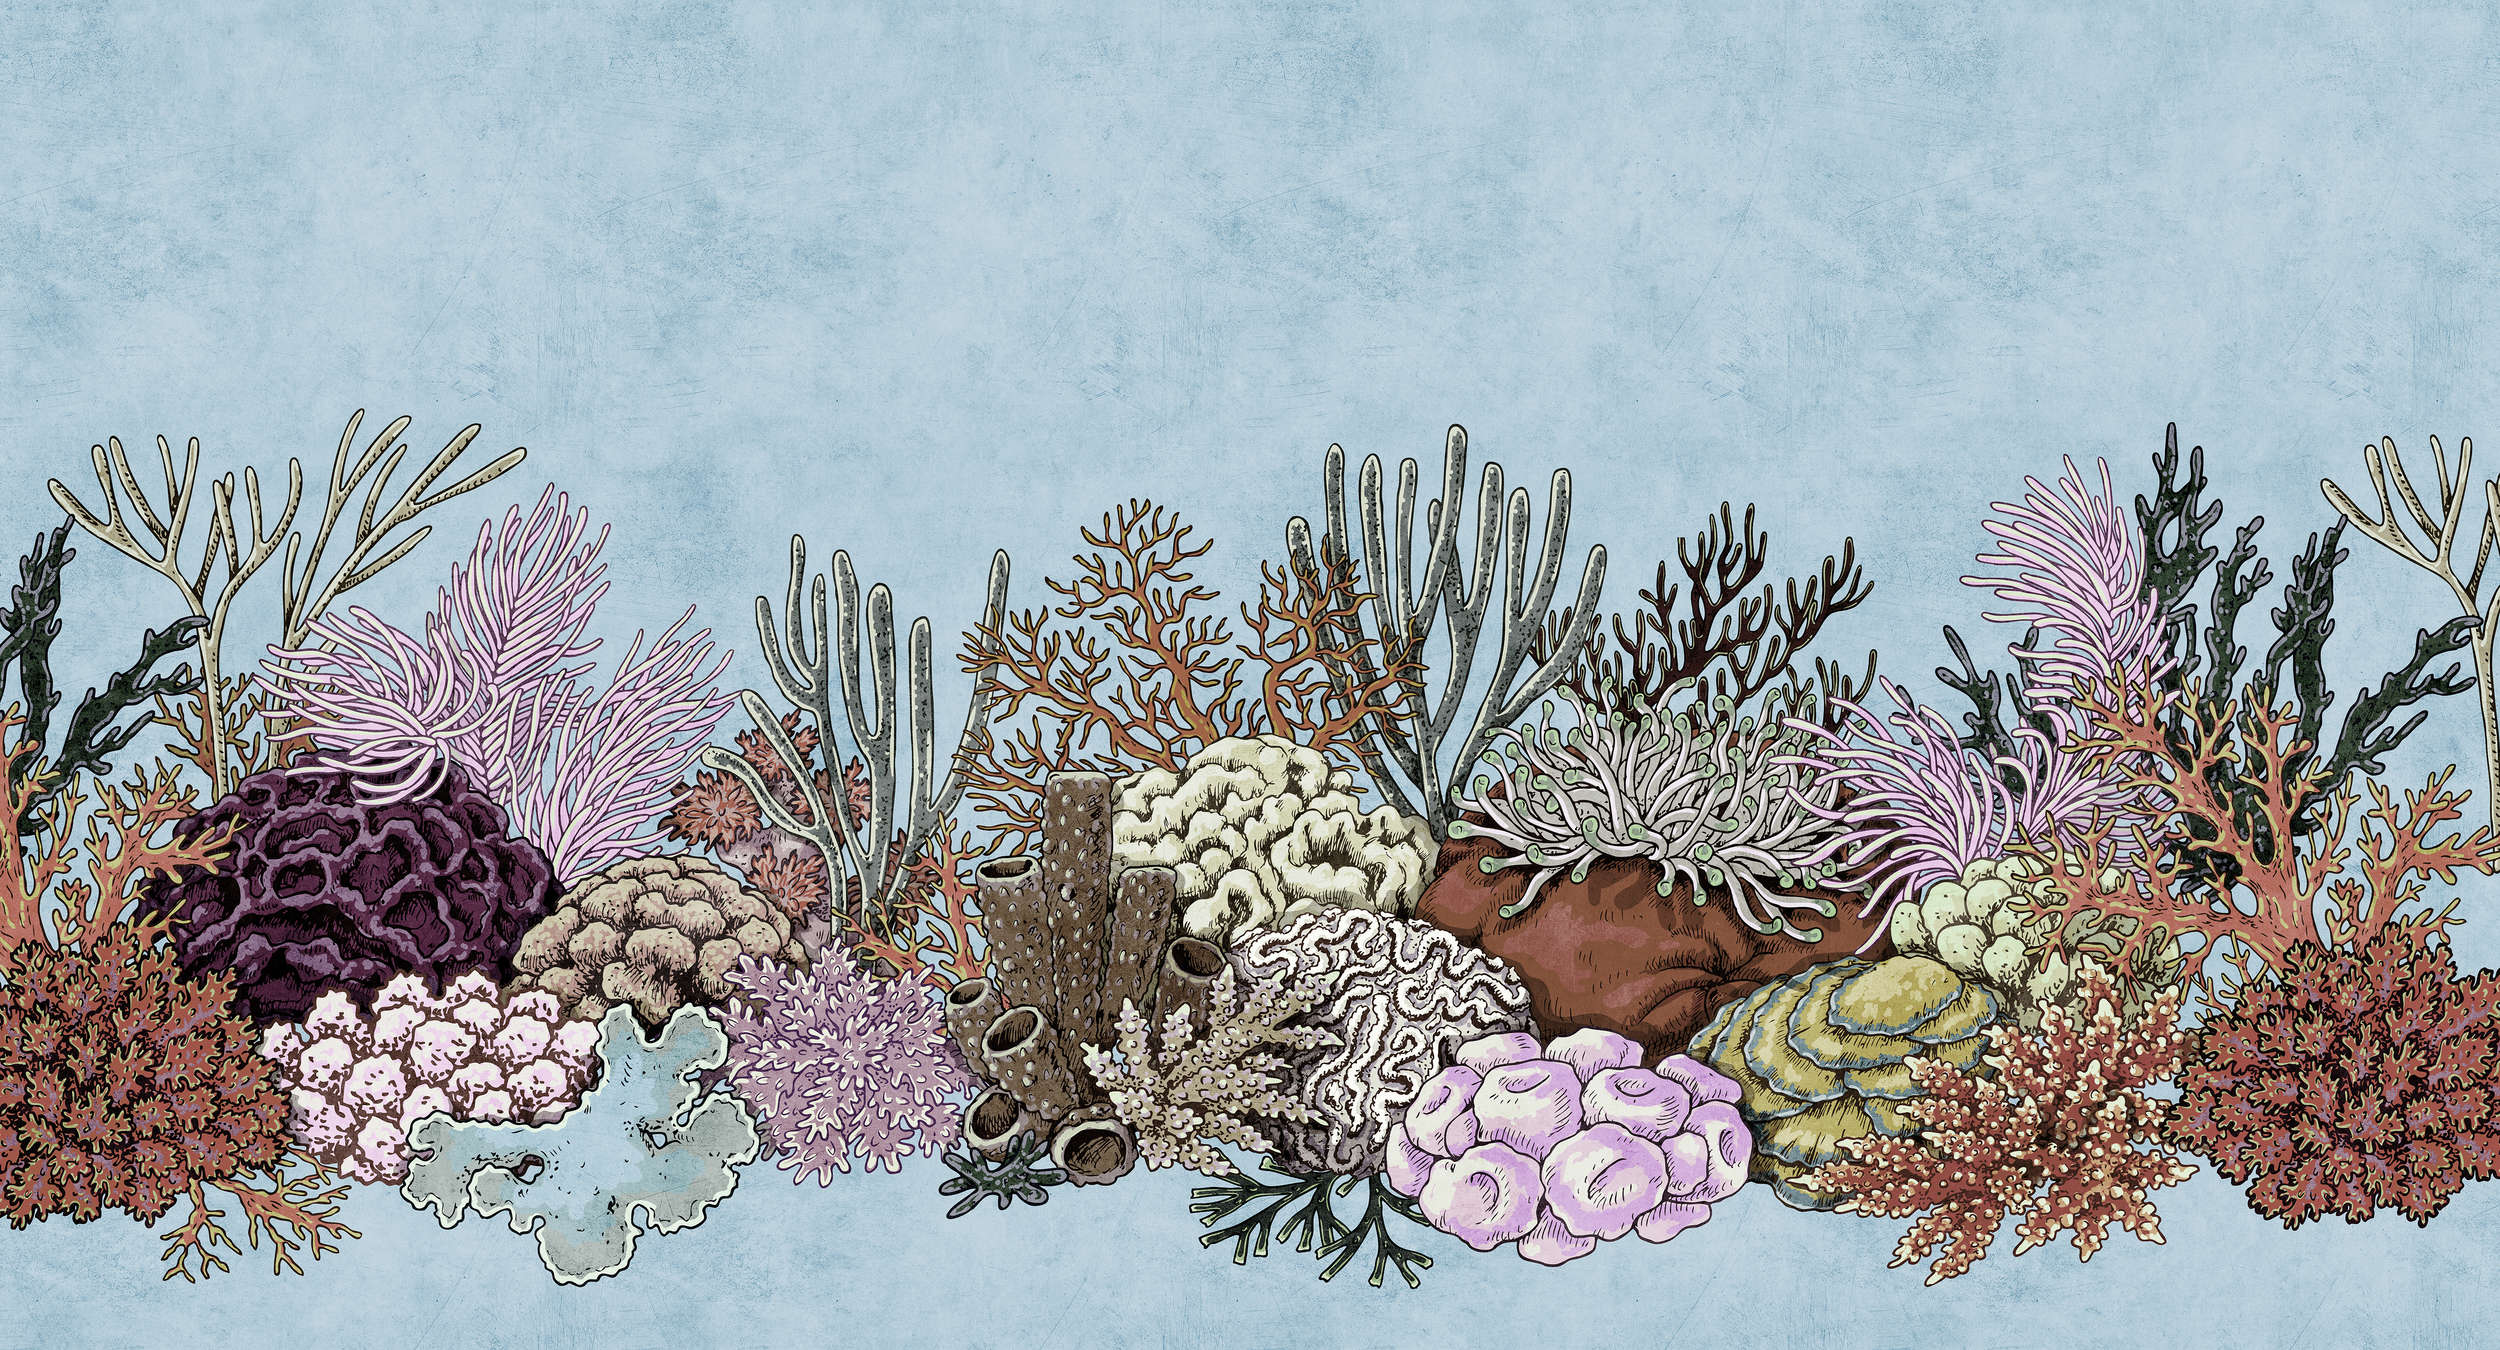             Octopus's Garden 1 - Papel pintado submarino con corales en estructura de papel secante - azul, rosa | nácar liso
        